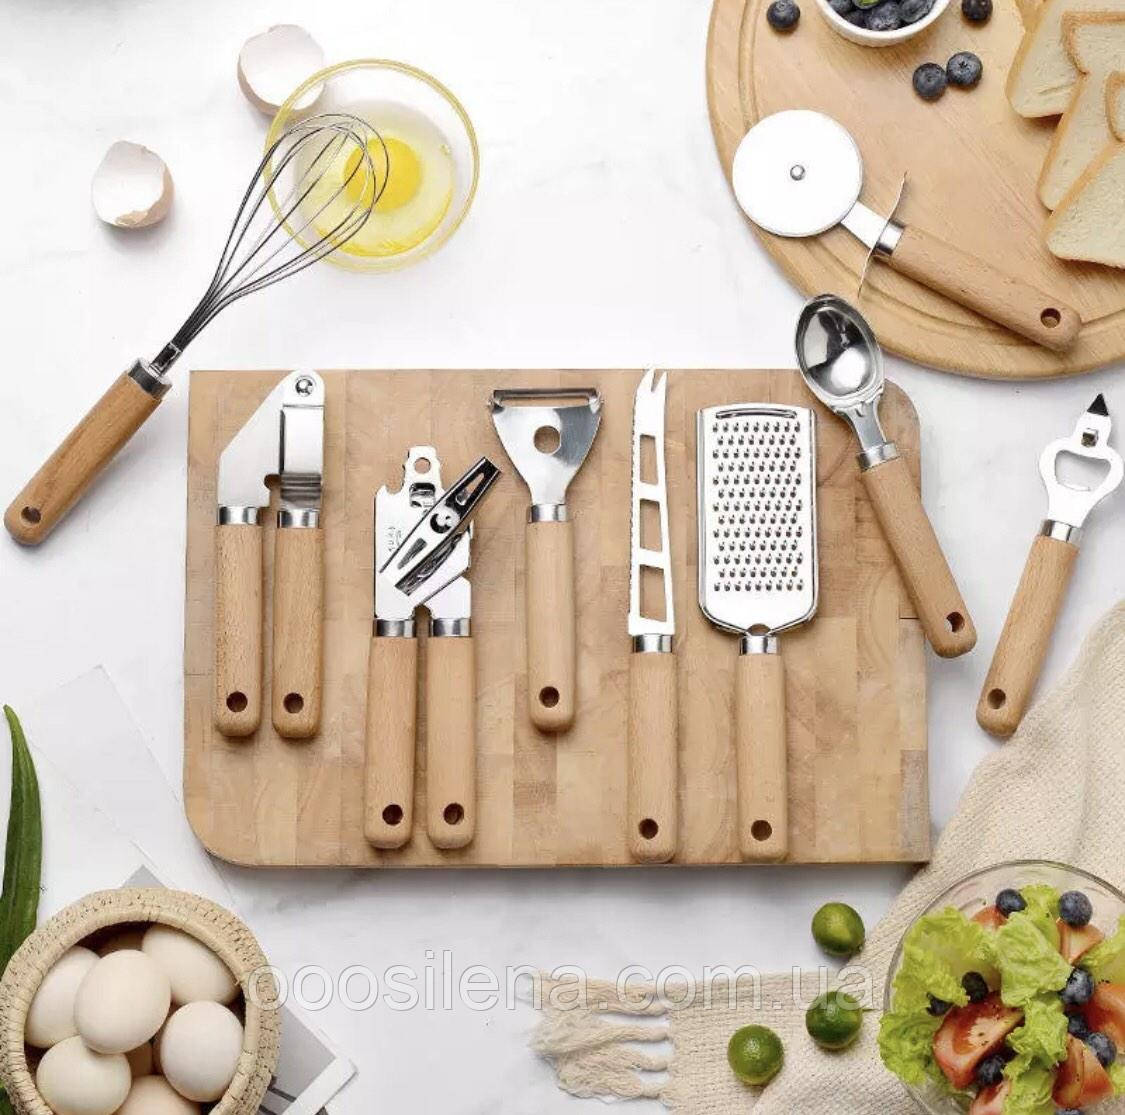 Набір кухонного приладдя із 9 предметів з дерев'яною ручкою